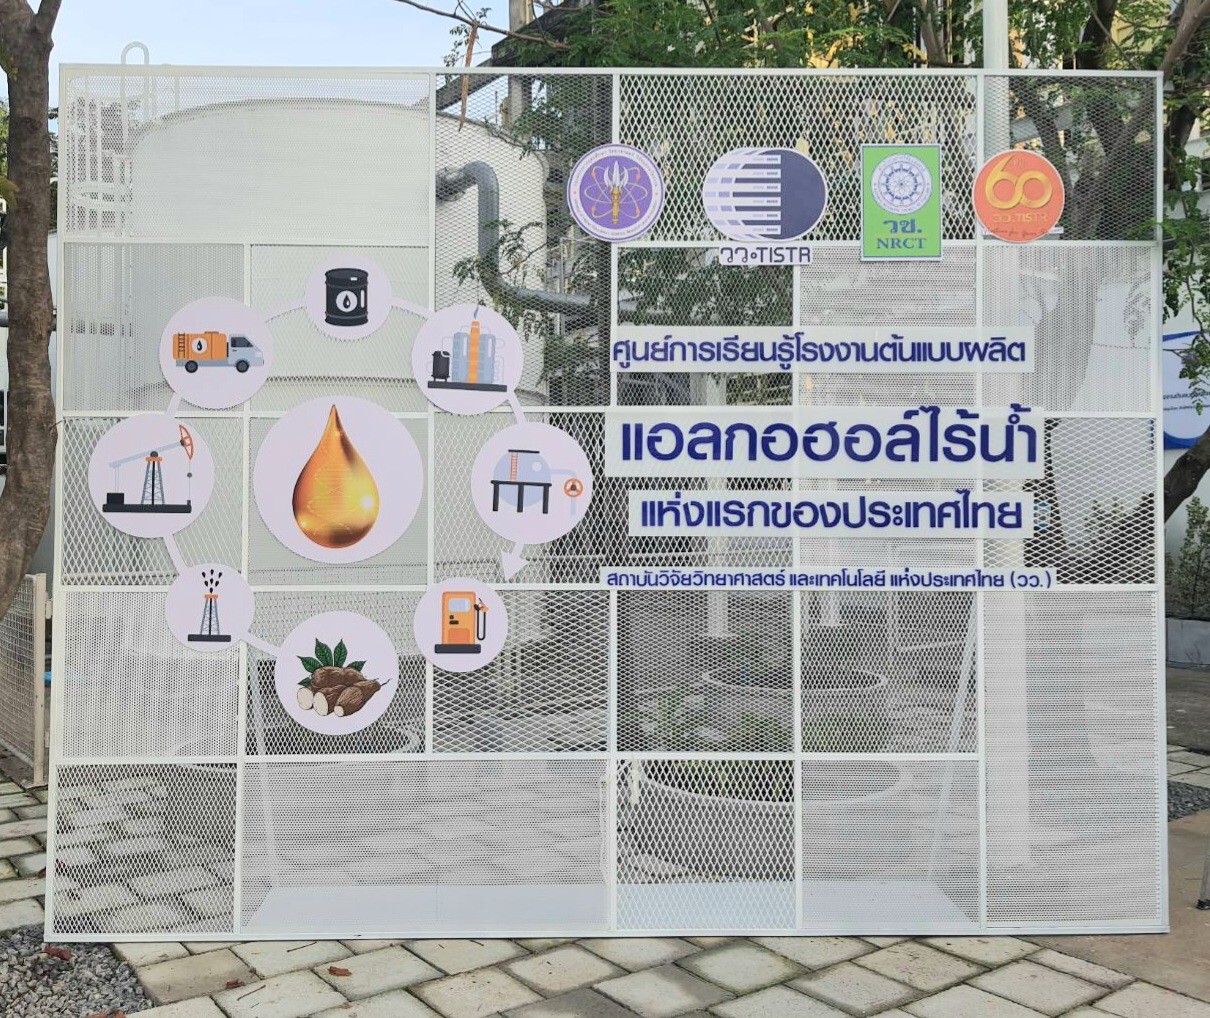 ศูนย์การเรียนรู้โรงงานต้นแบบผลิตแอลกอฮอล์ไร้น้ำแห่งแรกของประเทศไทย วว. ขับเคลื่อนนโยบาย BCG เพิ่มขีดความสามารถพึ่งตนเองทางเทคโนโลยีของประเทศ